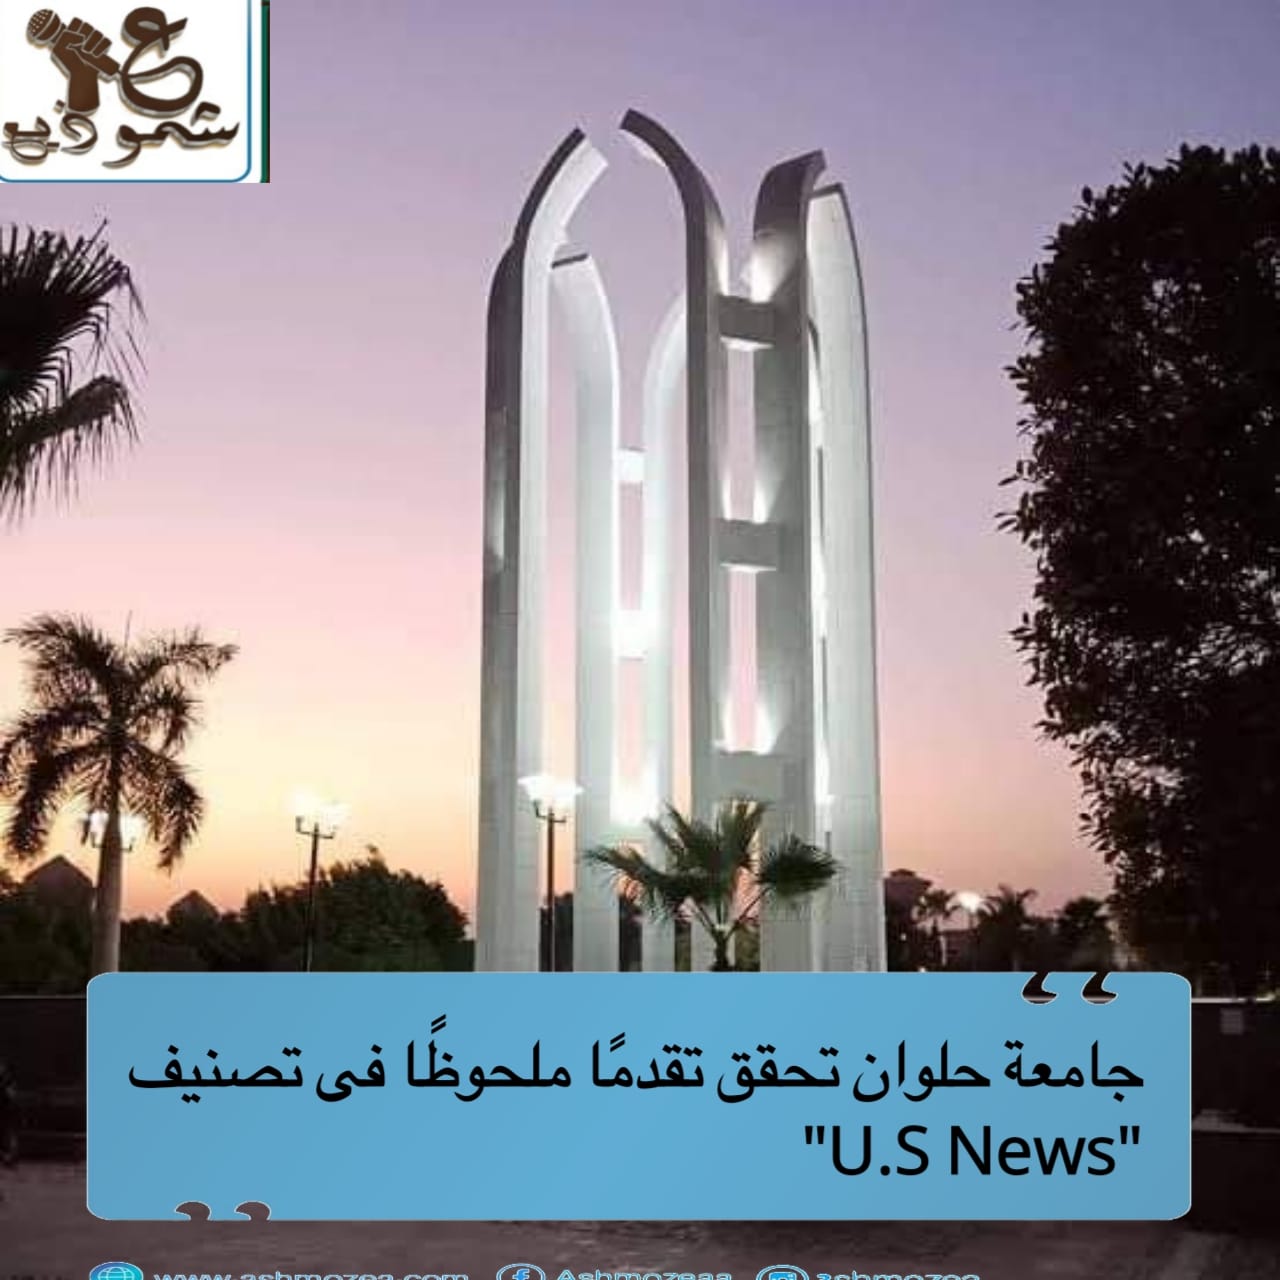 جامعة حلوان تحقق تقدمًا ملحوظًا فى تصنيف "U.S News"